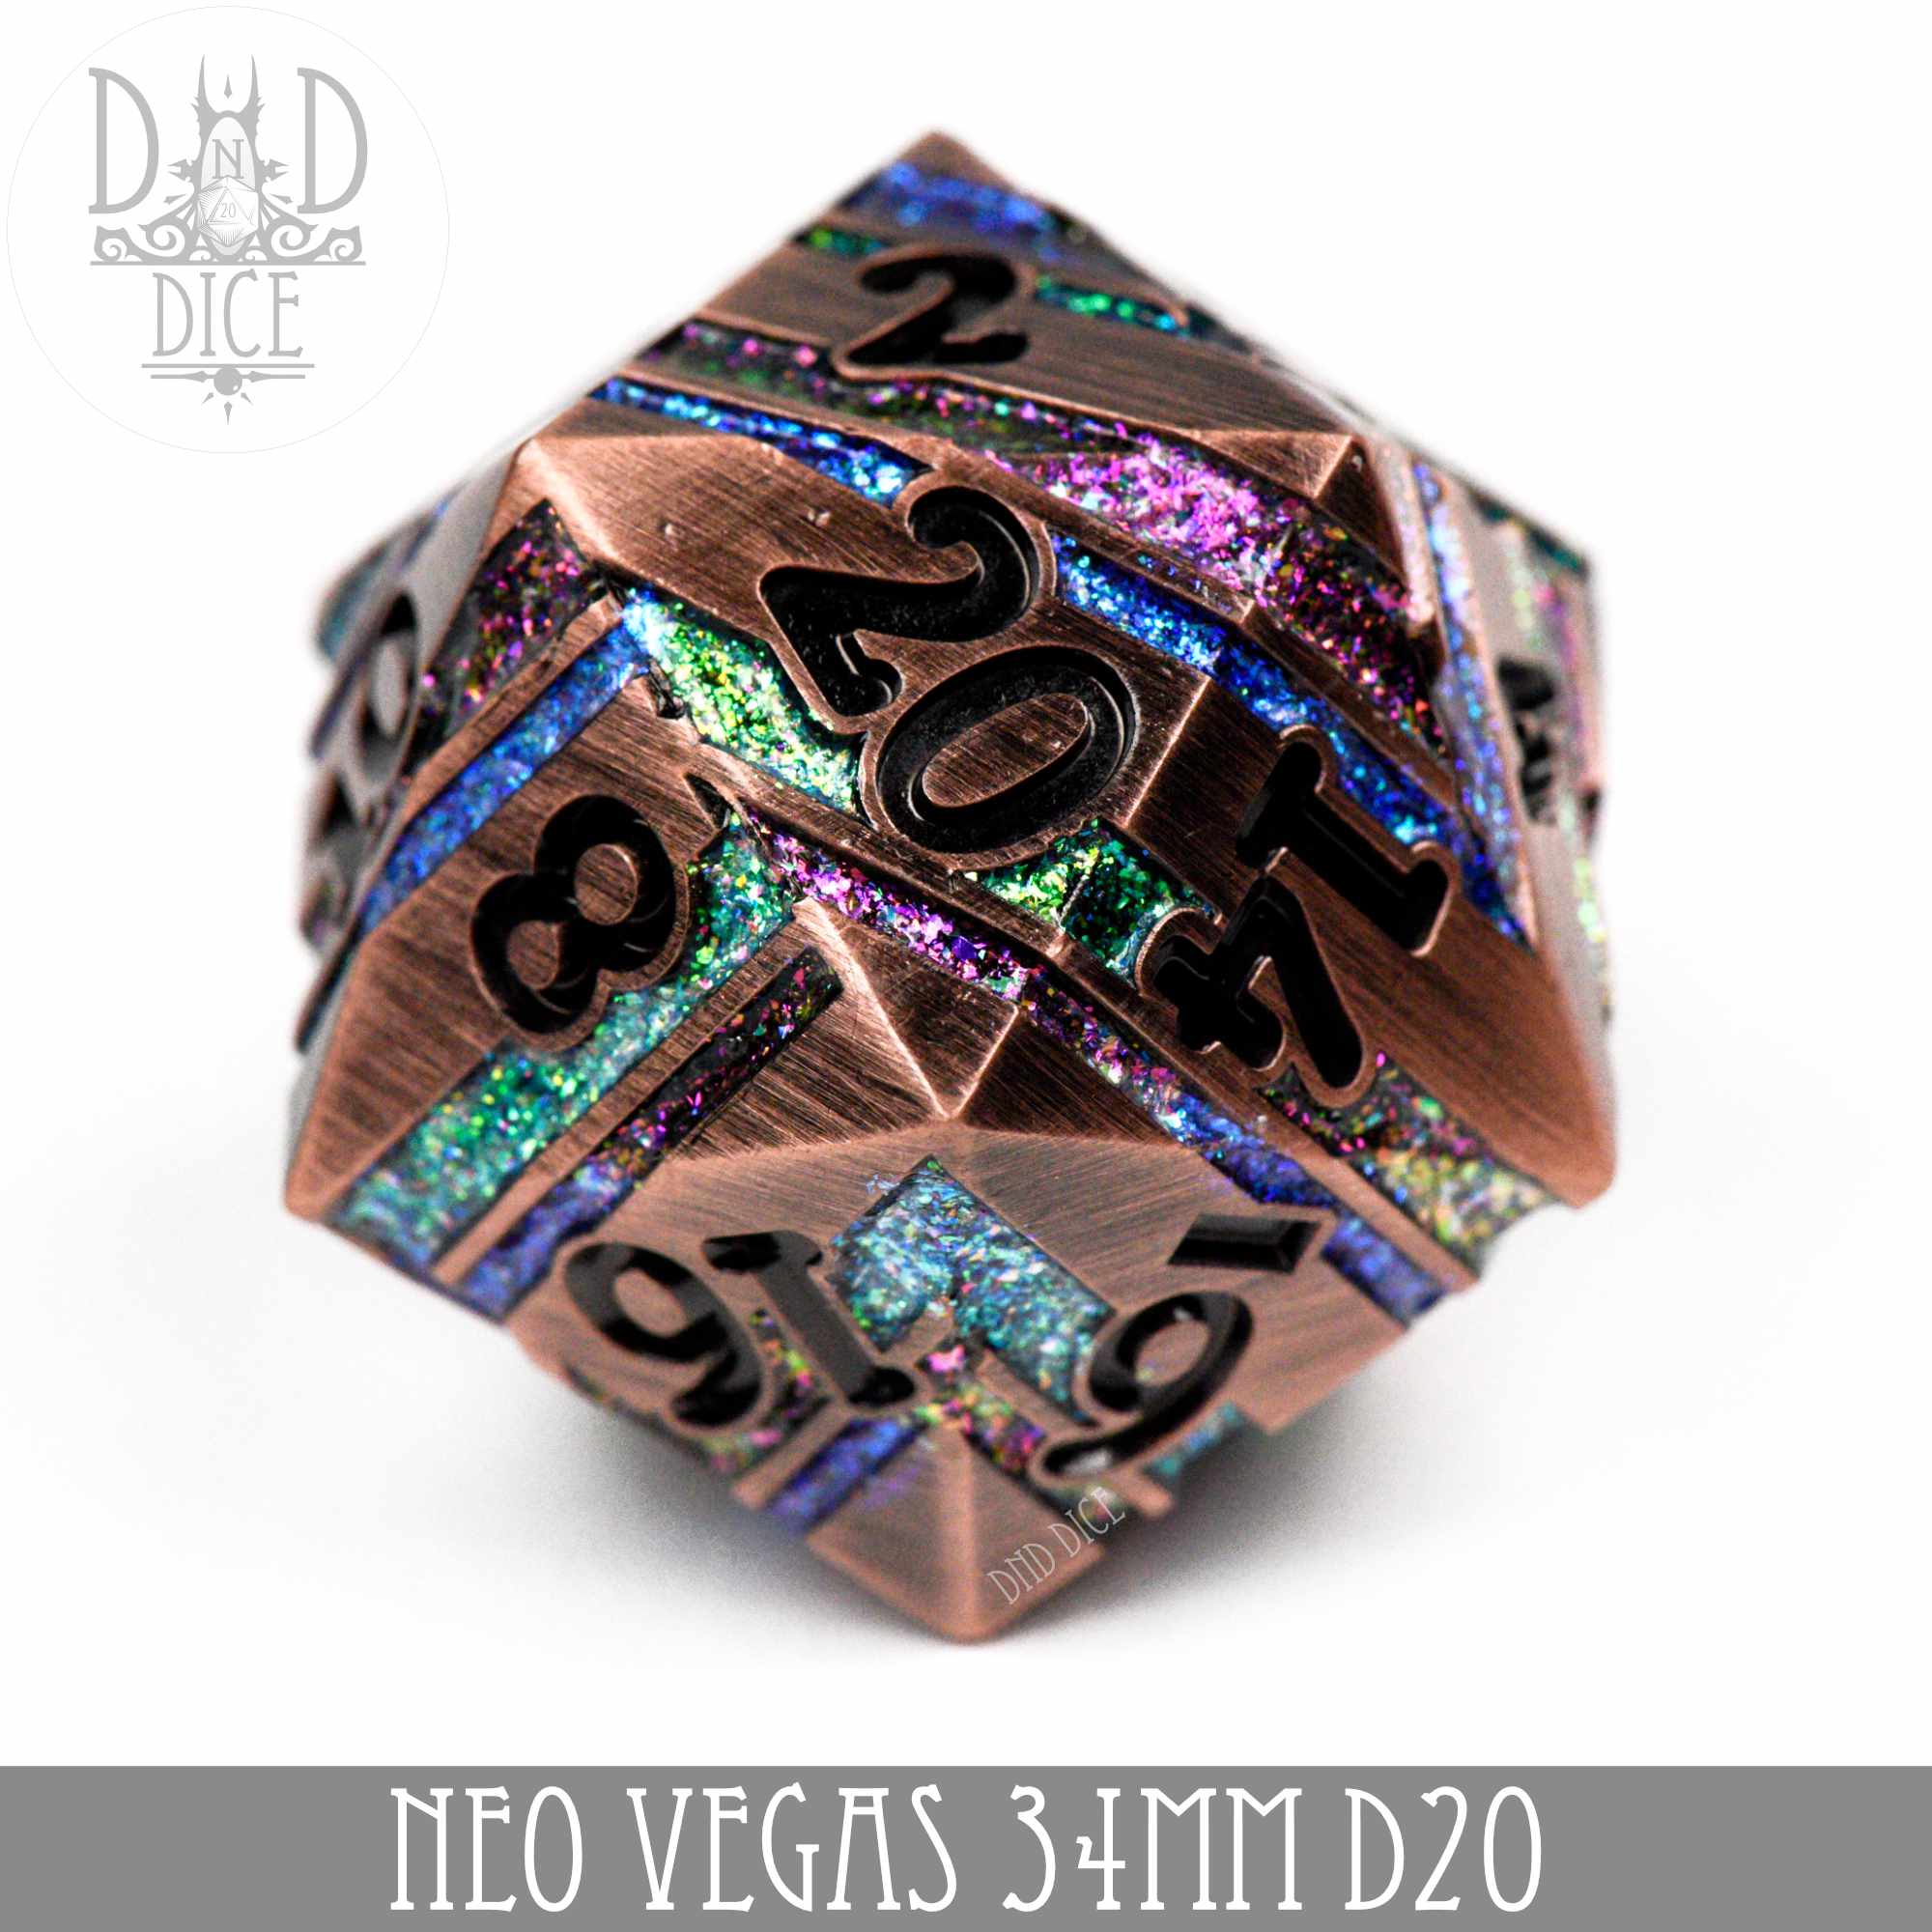 Neo Vegas 34mm D20 (Metal)